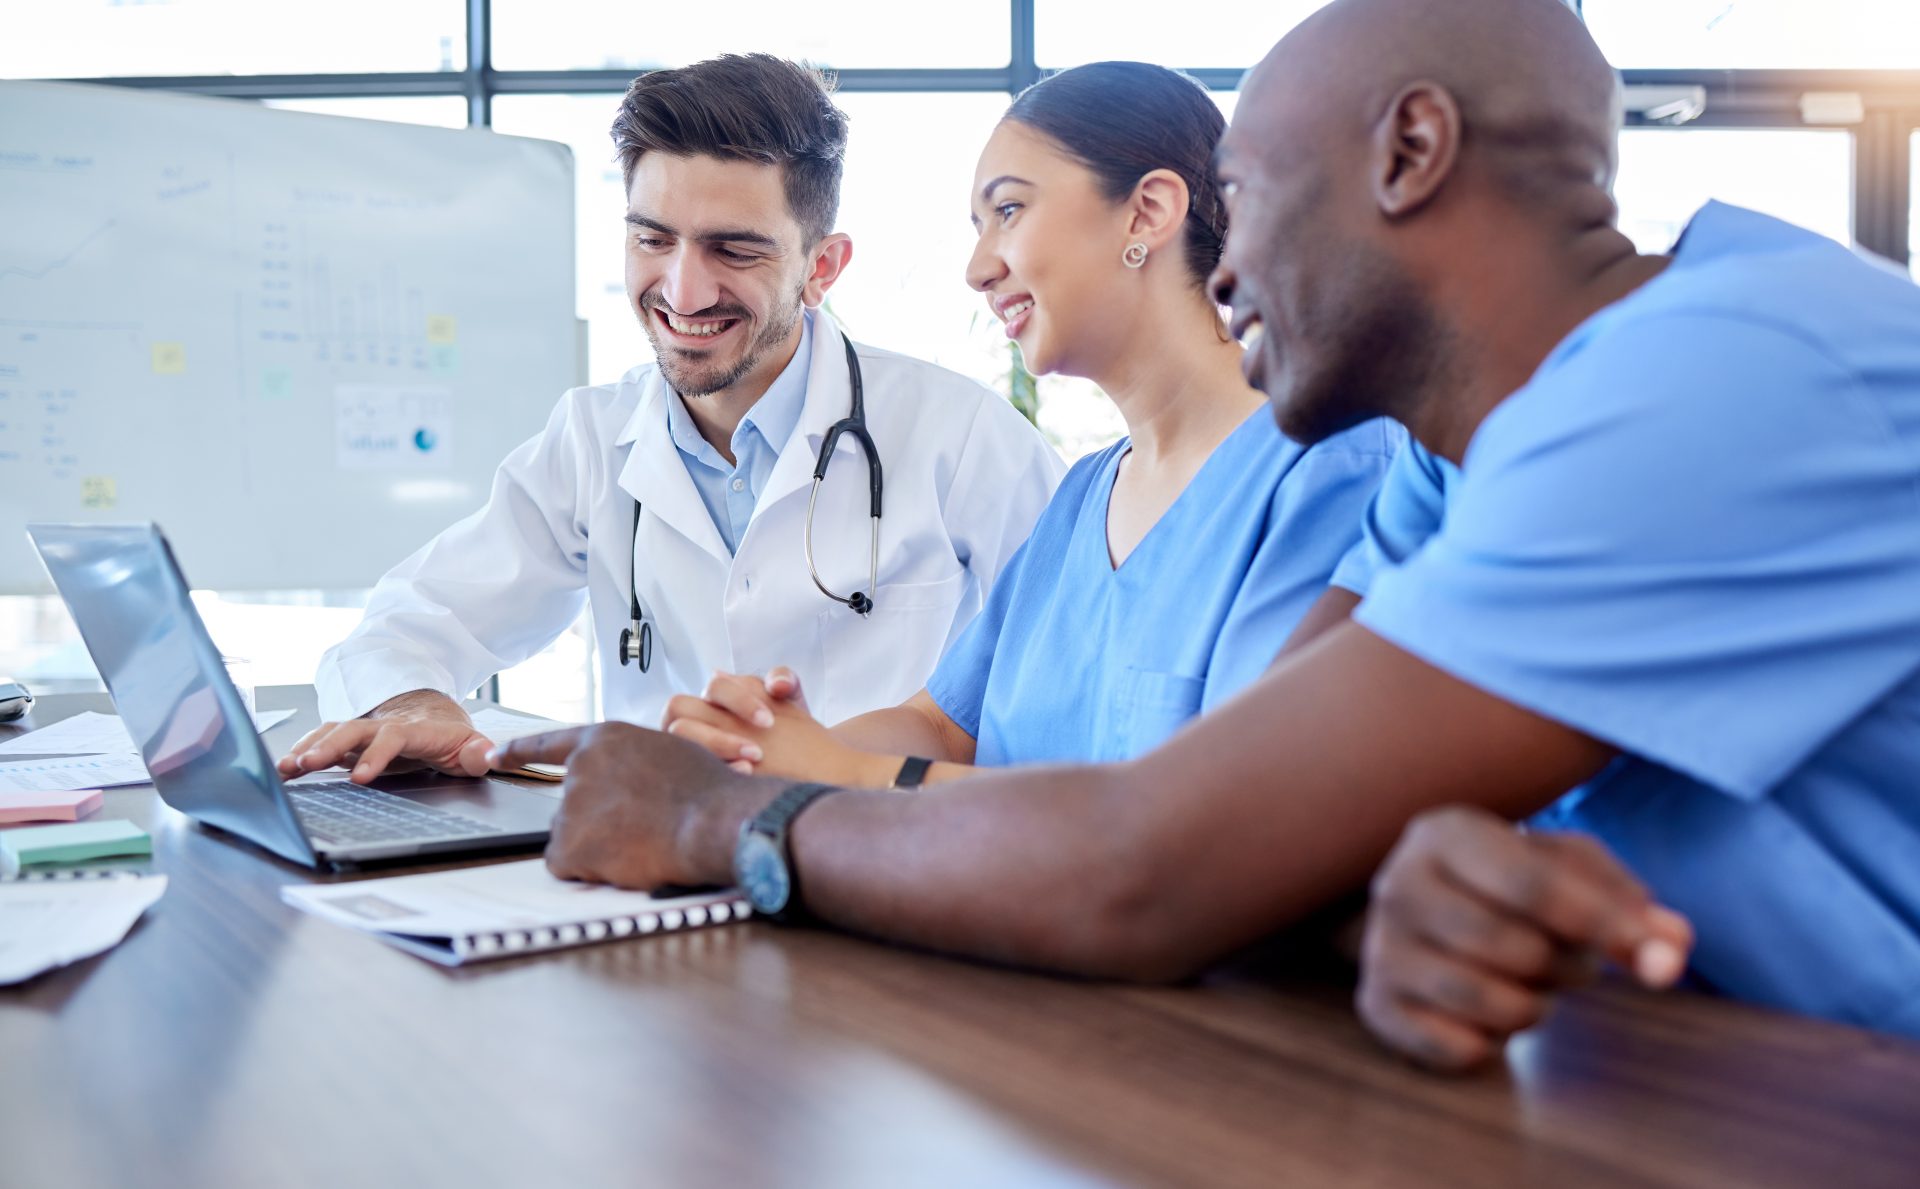 Ein Arzt und zwei Medizinische Fachangestellte sitzen lachend an einem Notebook